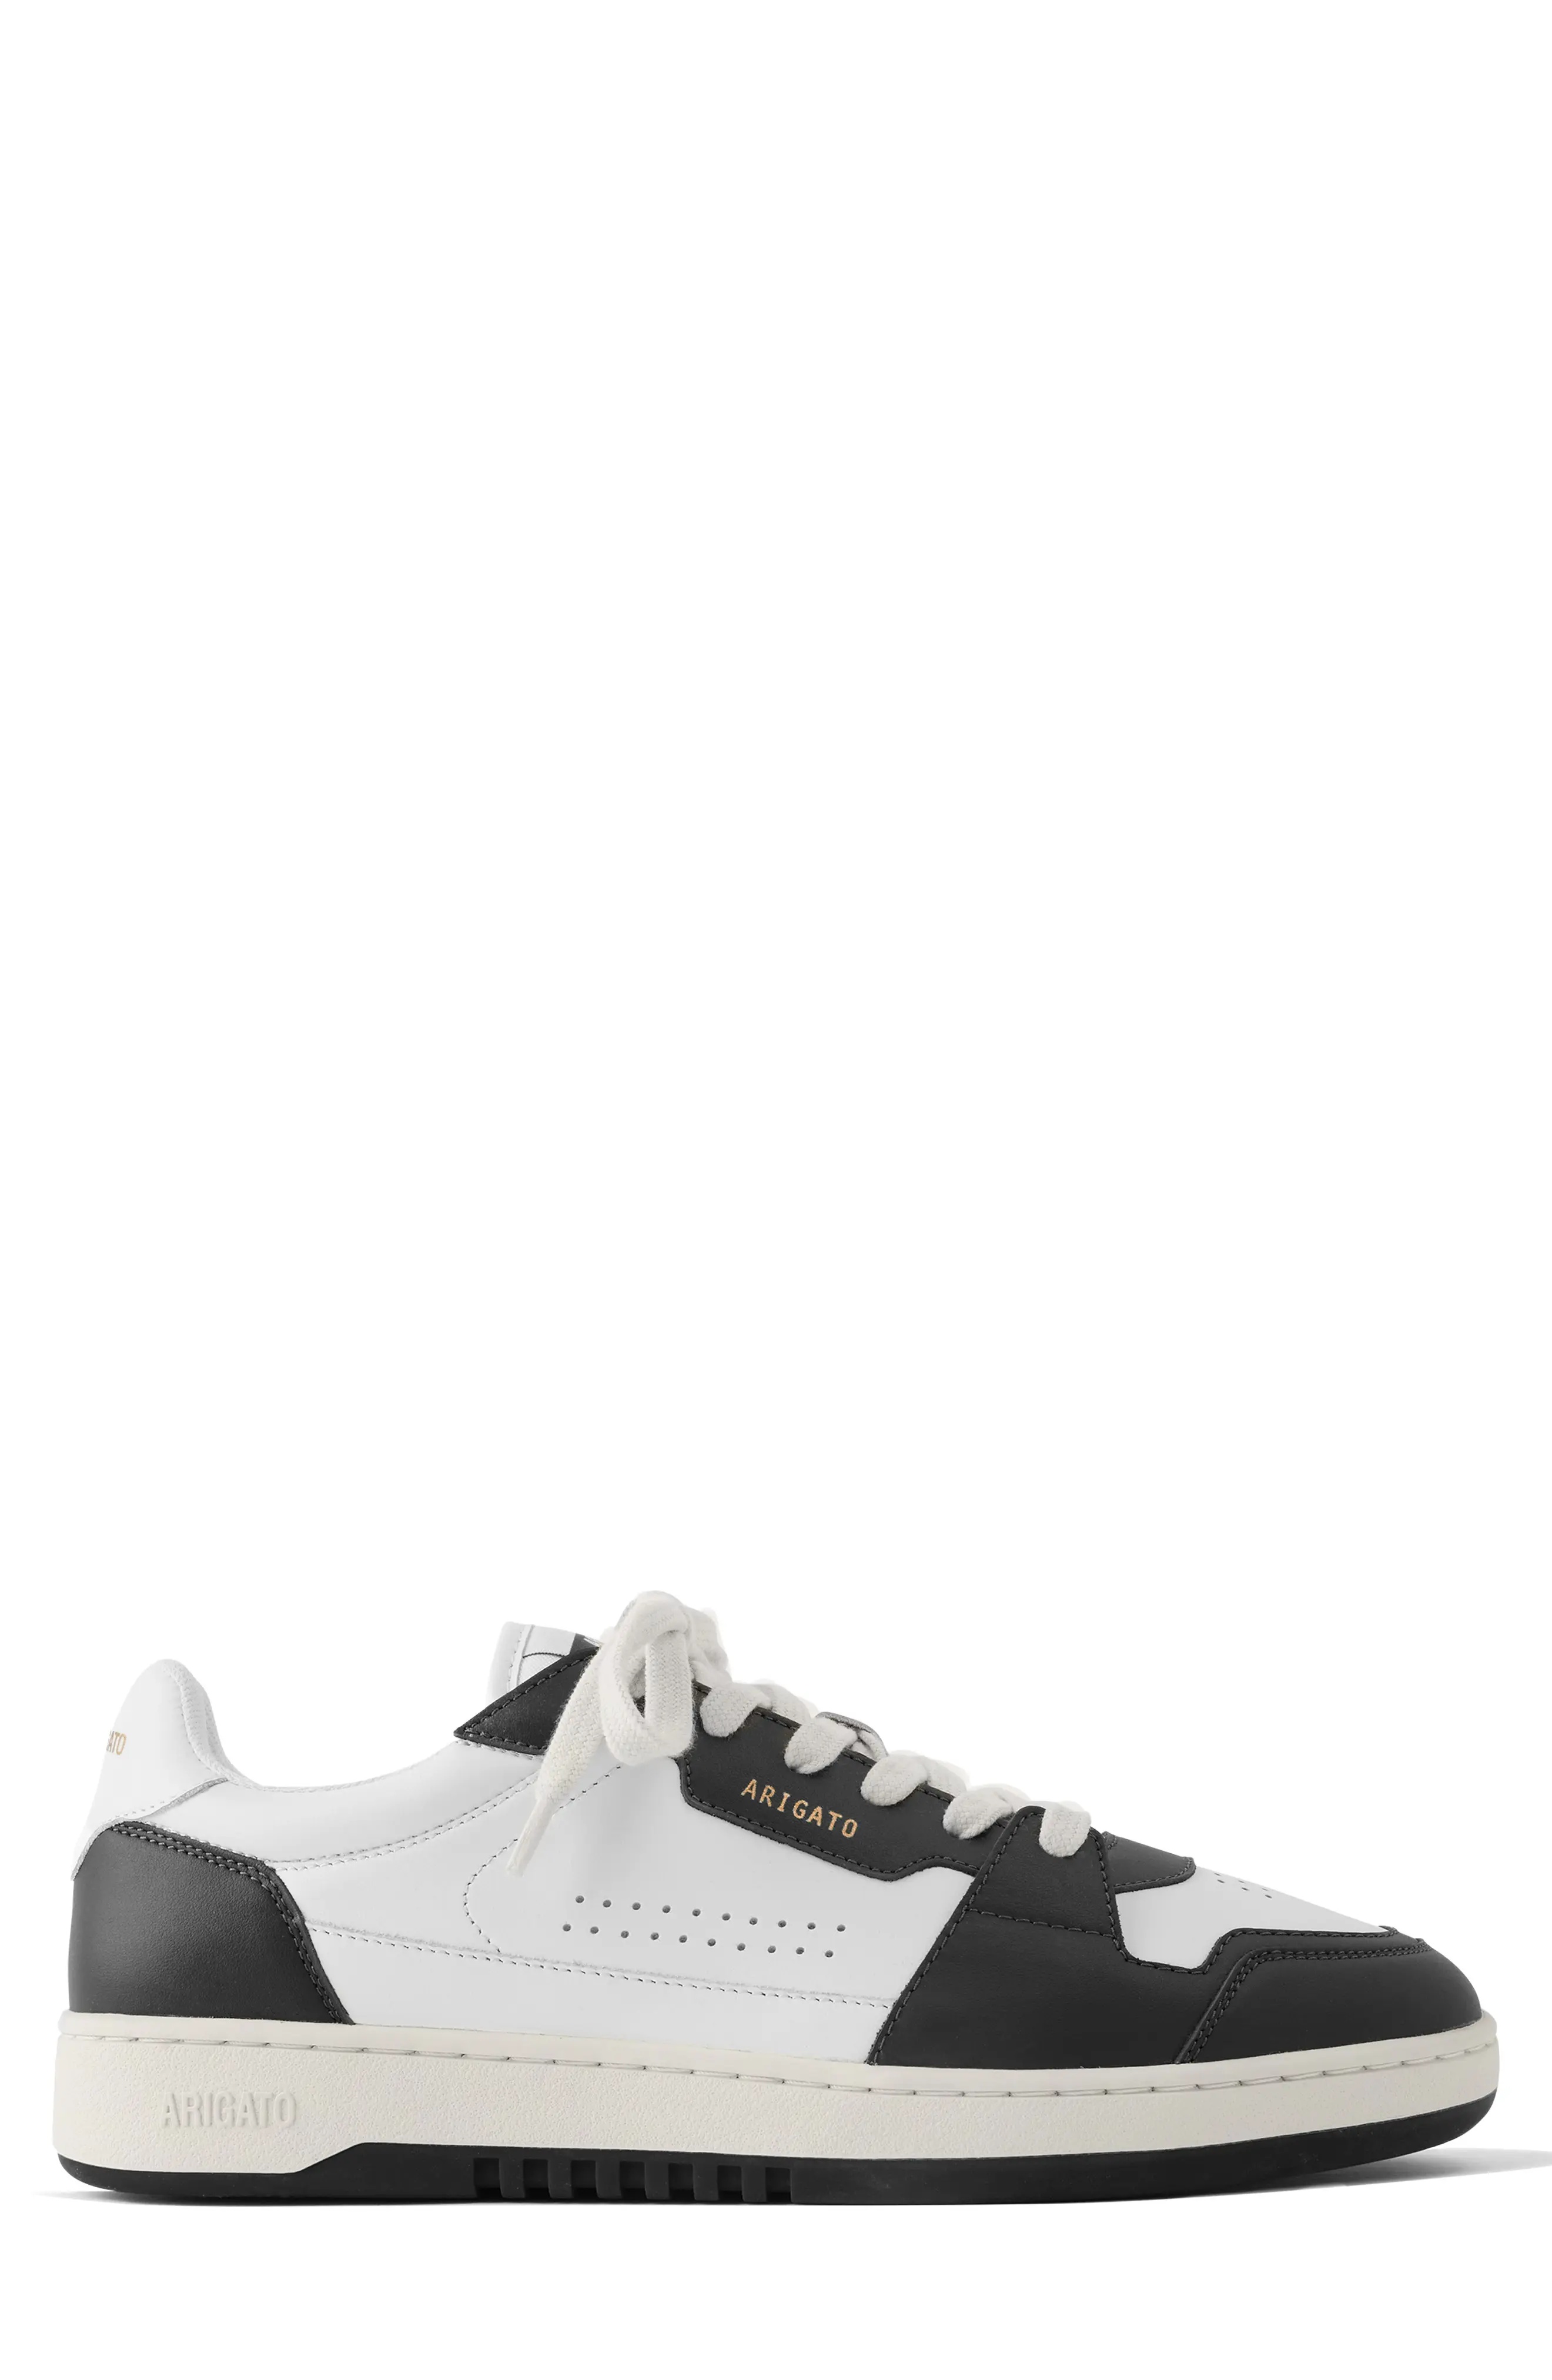 Dice Lo Sneaker in White/Black - 3